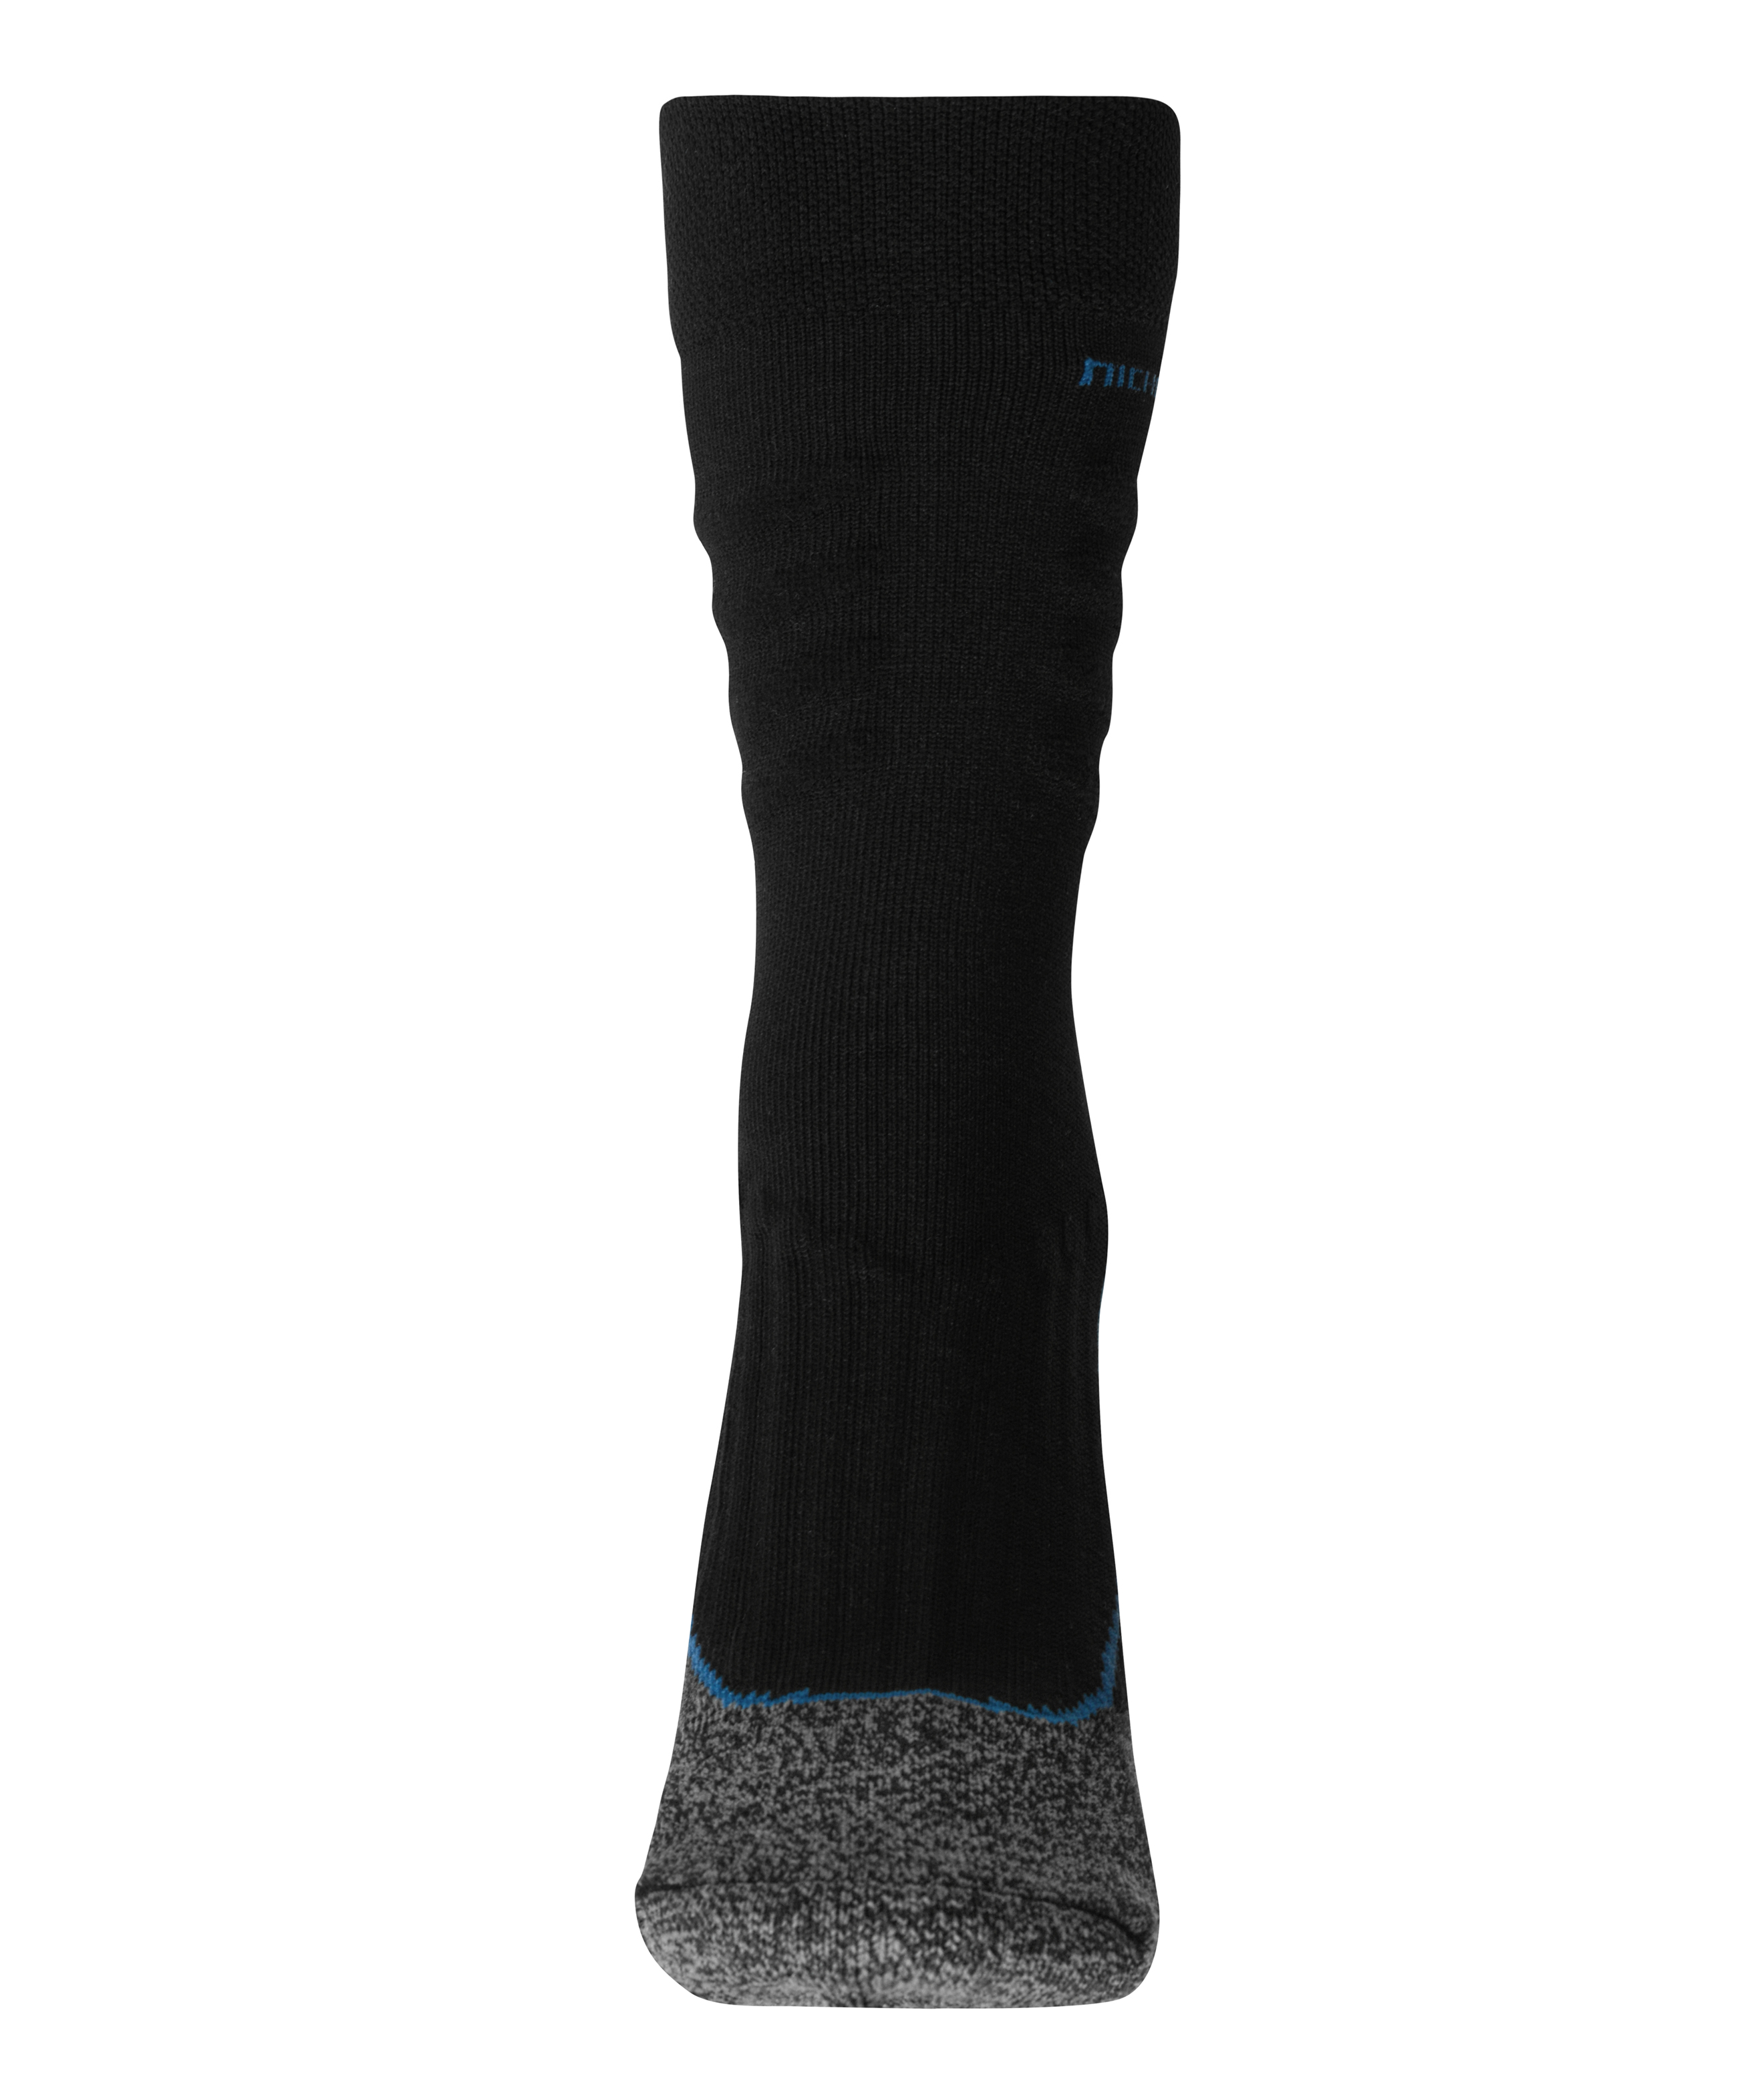 Worker Socks Cool JN212 Funktionelle Socke für Damen und Herren